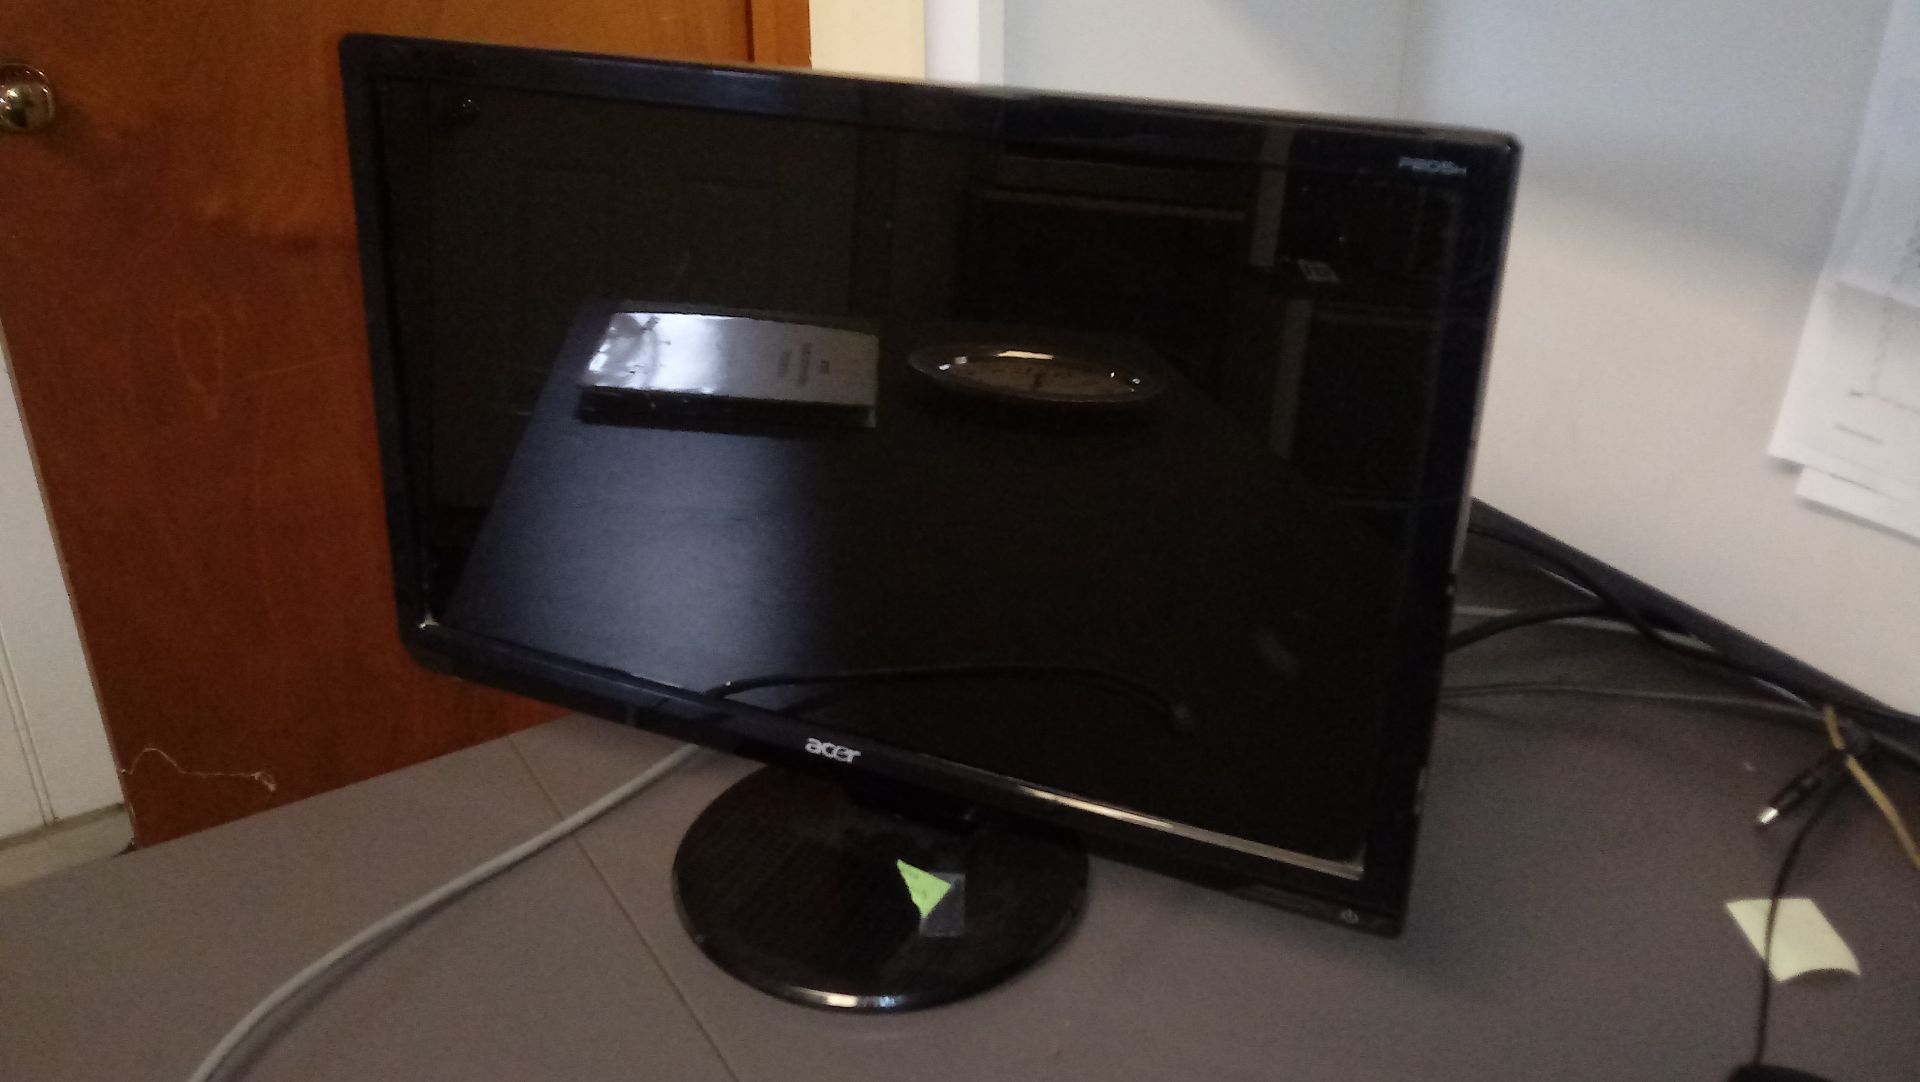 LOT: Acer Flat Screen Monitor, Epson Model ET-4750 Printer, Staples Paper Shredder